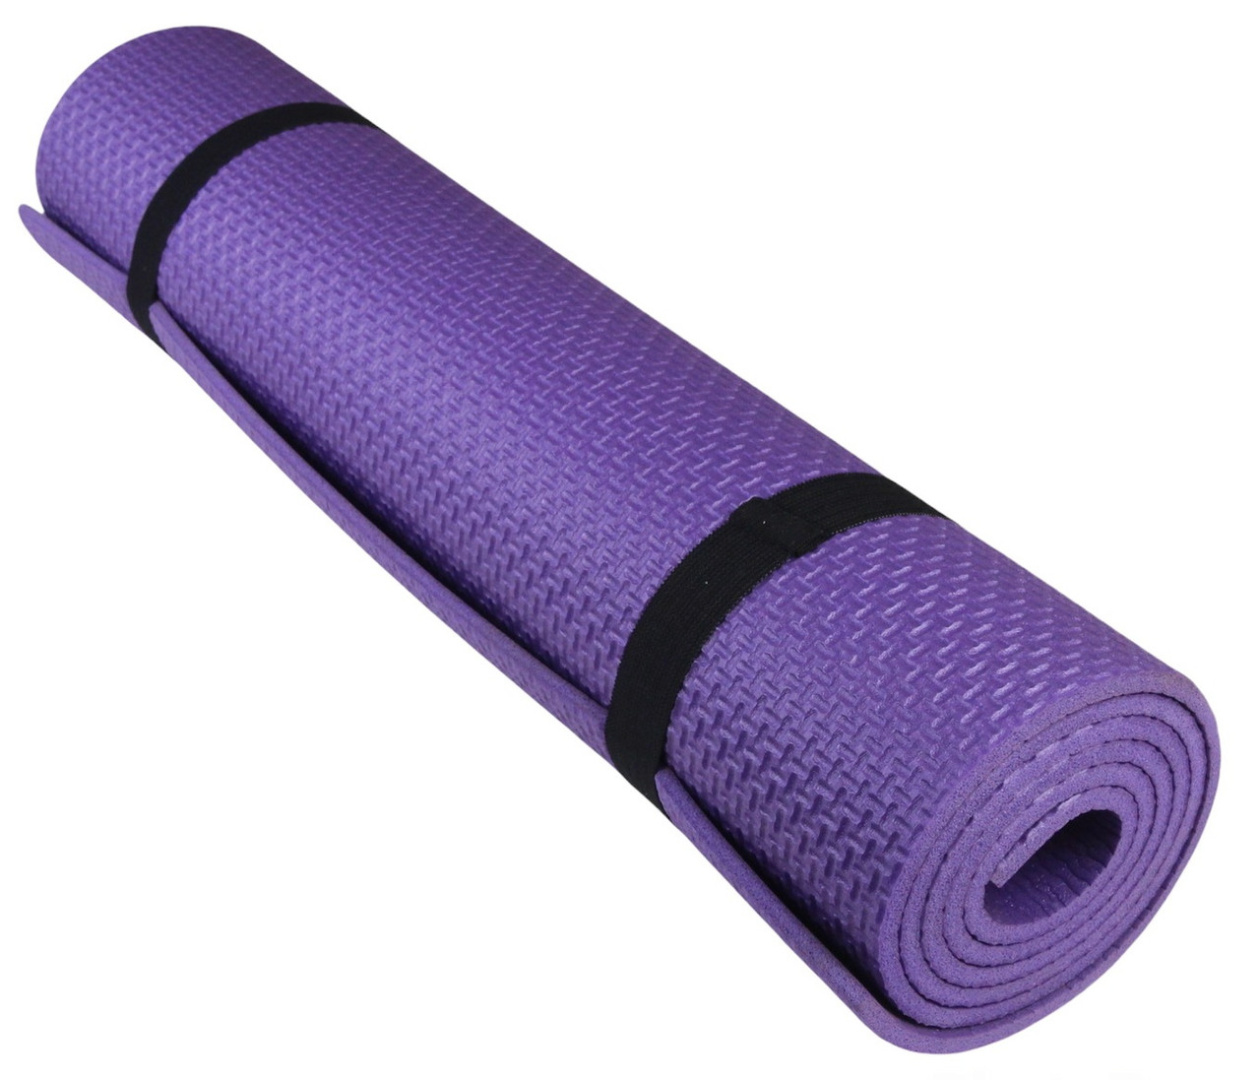 Коврик для фитнеса и йоги AEROBICA 5, фиолетовый, толщина 5мм, ширина 60см детальная фотка